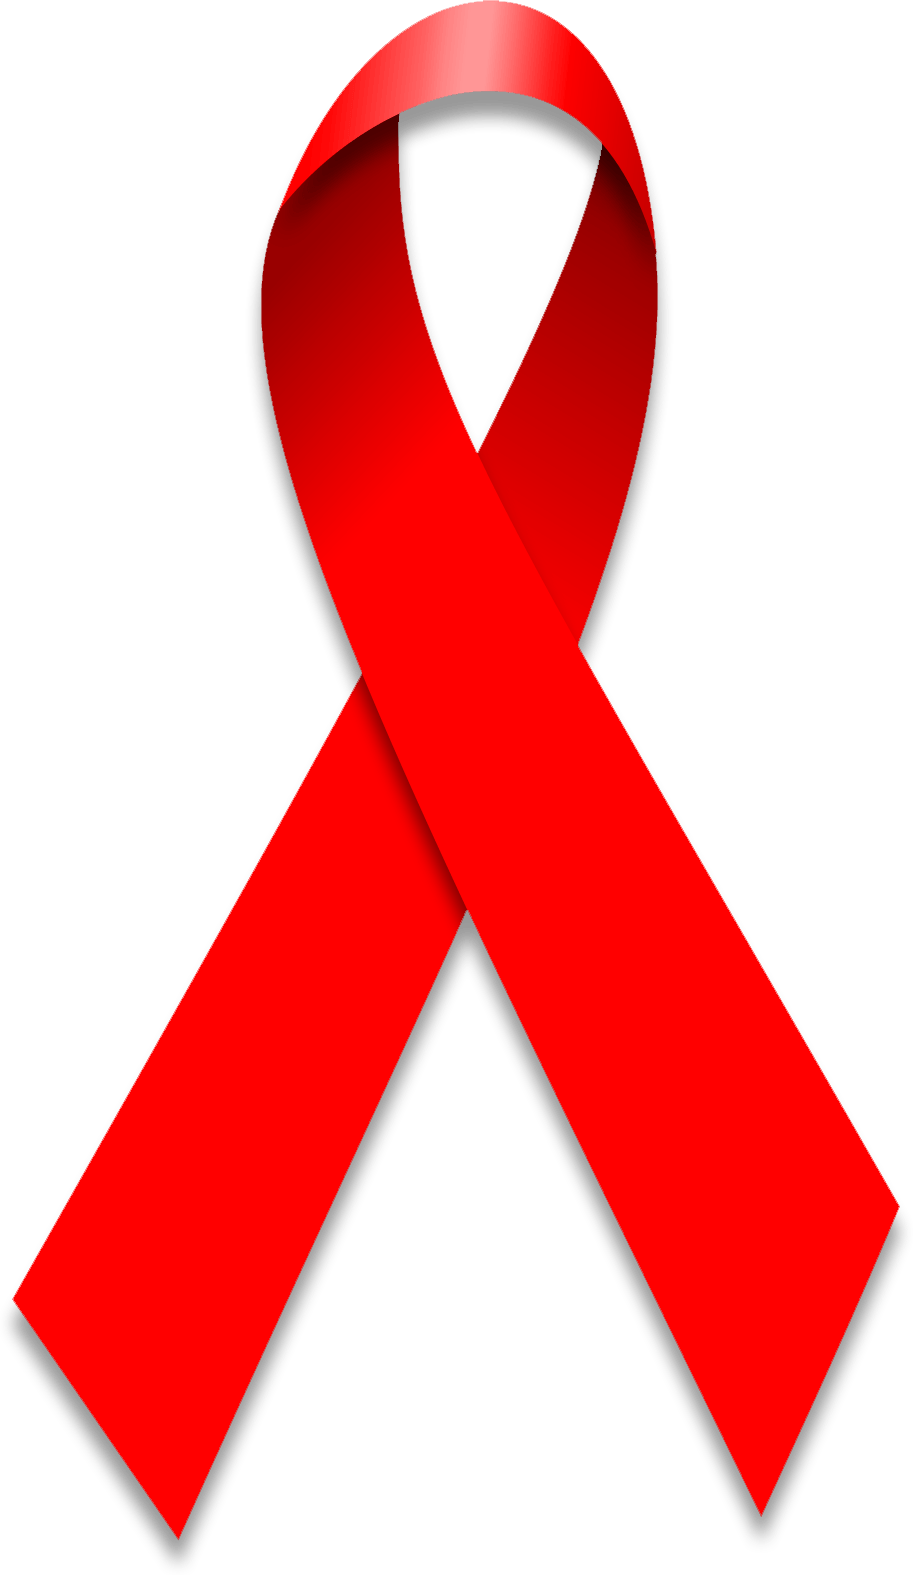 Aids Ribbon Logo - File:World Aids Day Ribbon.png - Wikimedia Commons